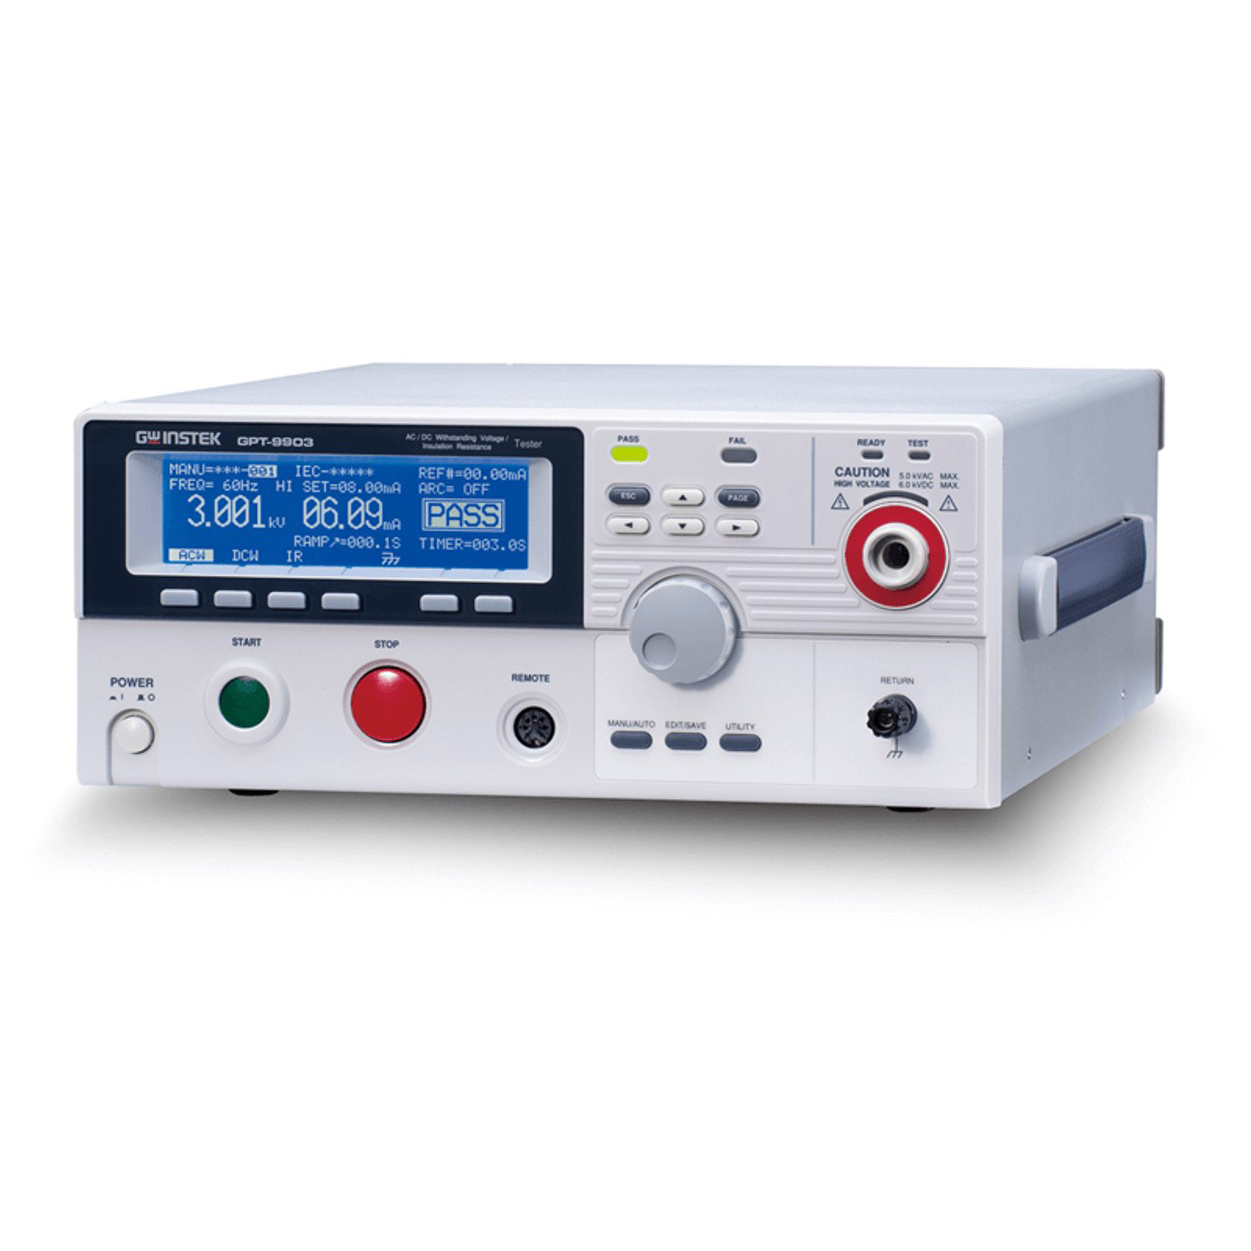 500VA 내전압+절연저항 시험기 GPT-9903 / GPT-9904